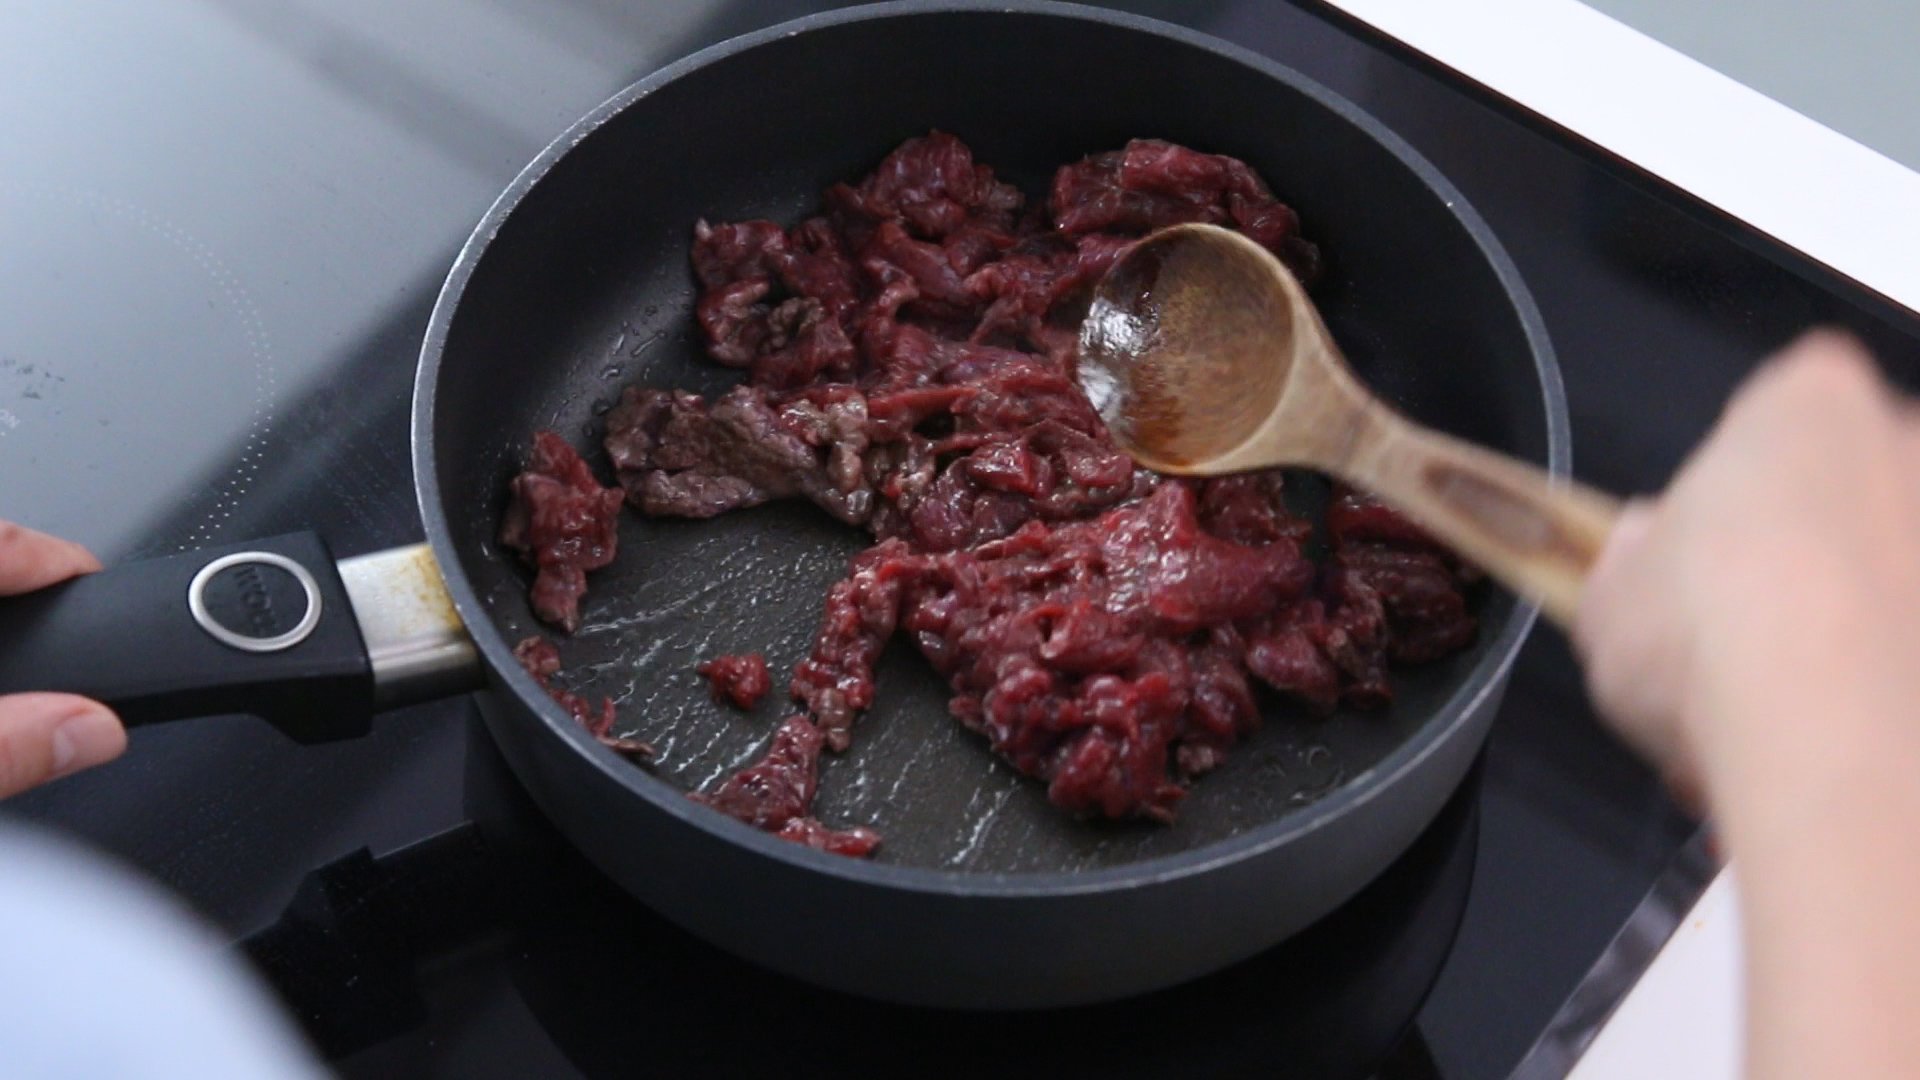 Sau khi ướp xong thì có thể mang thịt bò đi xào nấu